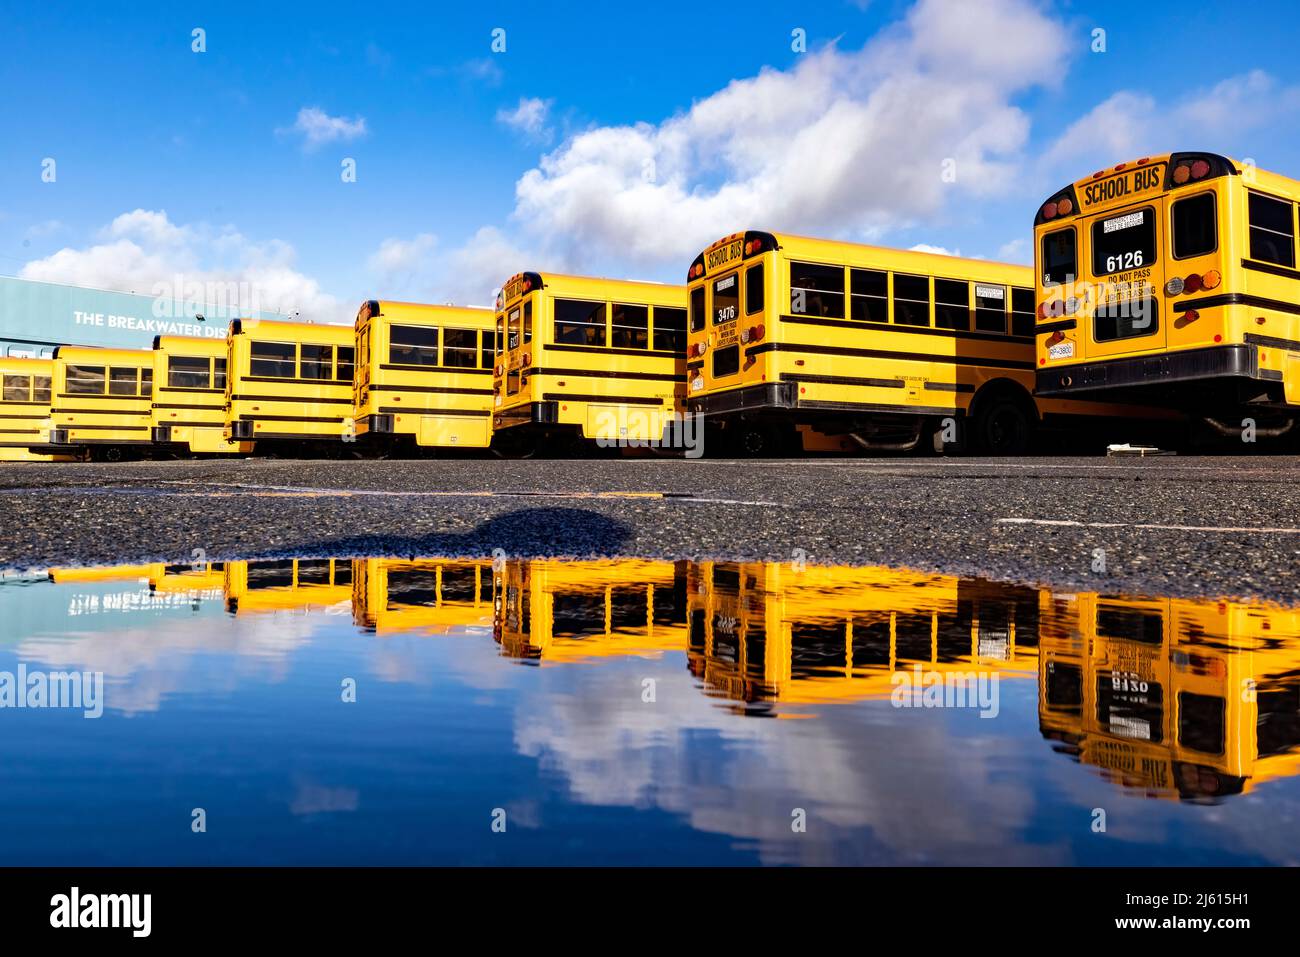 Farbenfrohe Schulbus-Reflektionen am Ogden Point Pier - Victoria, Vancouver Island, British Columbia, Kanada Stockfoto